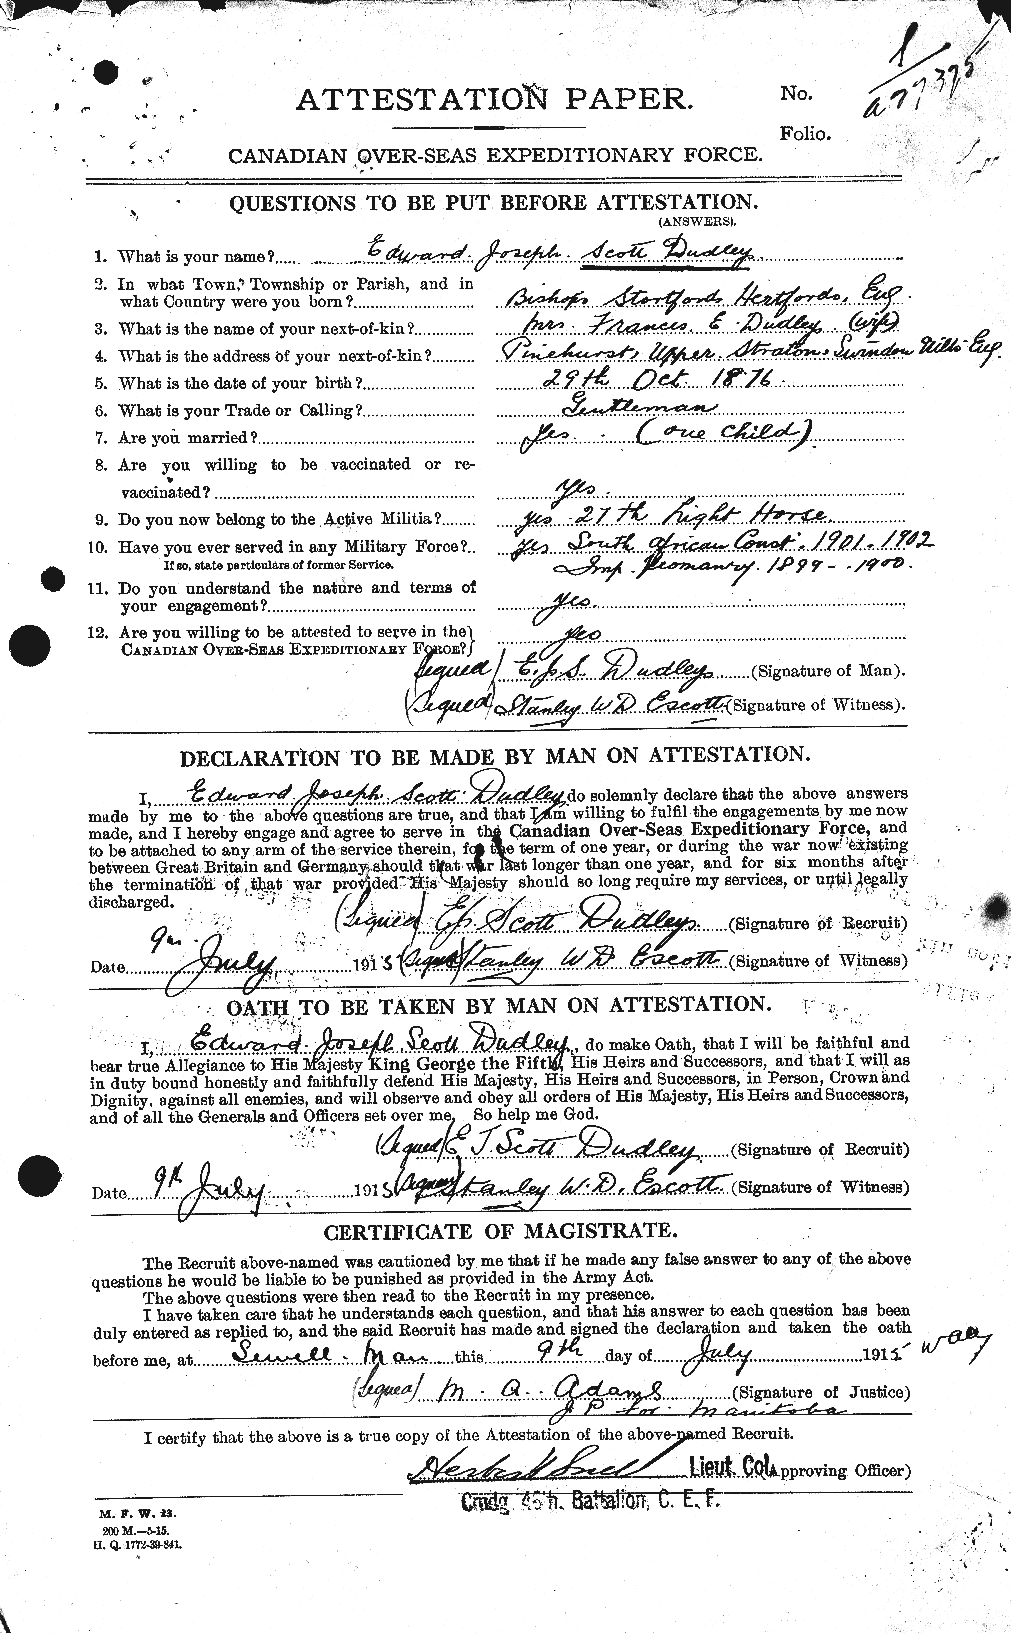 Dossiers du Personnel de la Première Guerre mondiale - CEC 087243a